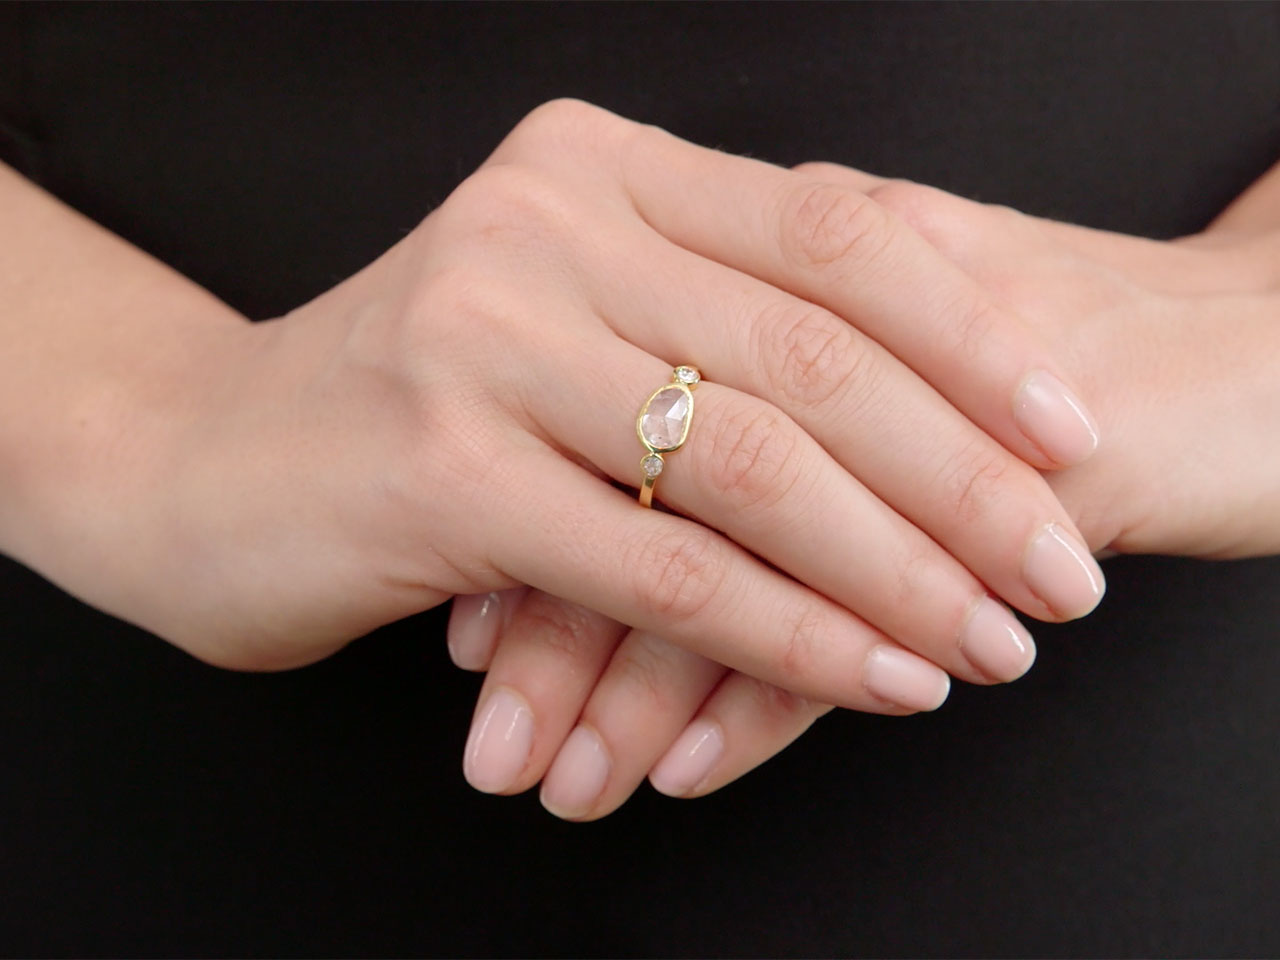 Beladora 'Bespoke' Rose-cut Diamond Ring in 18K Gold